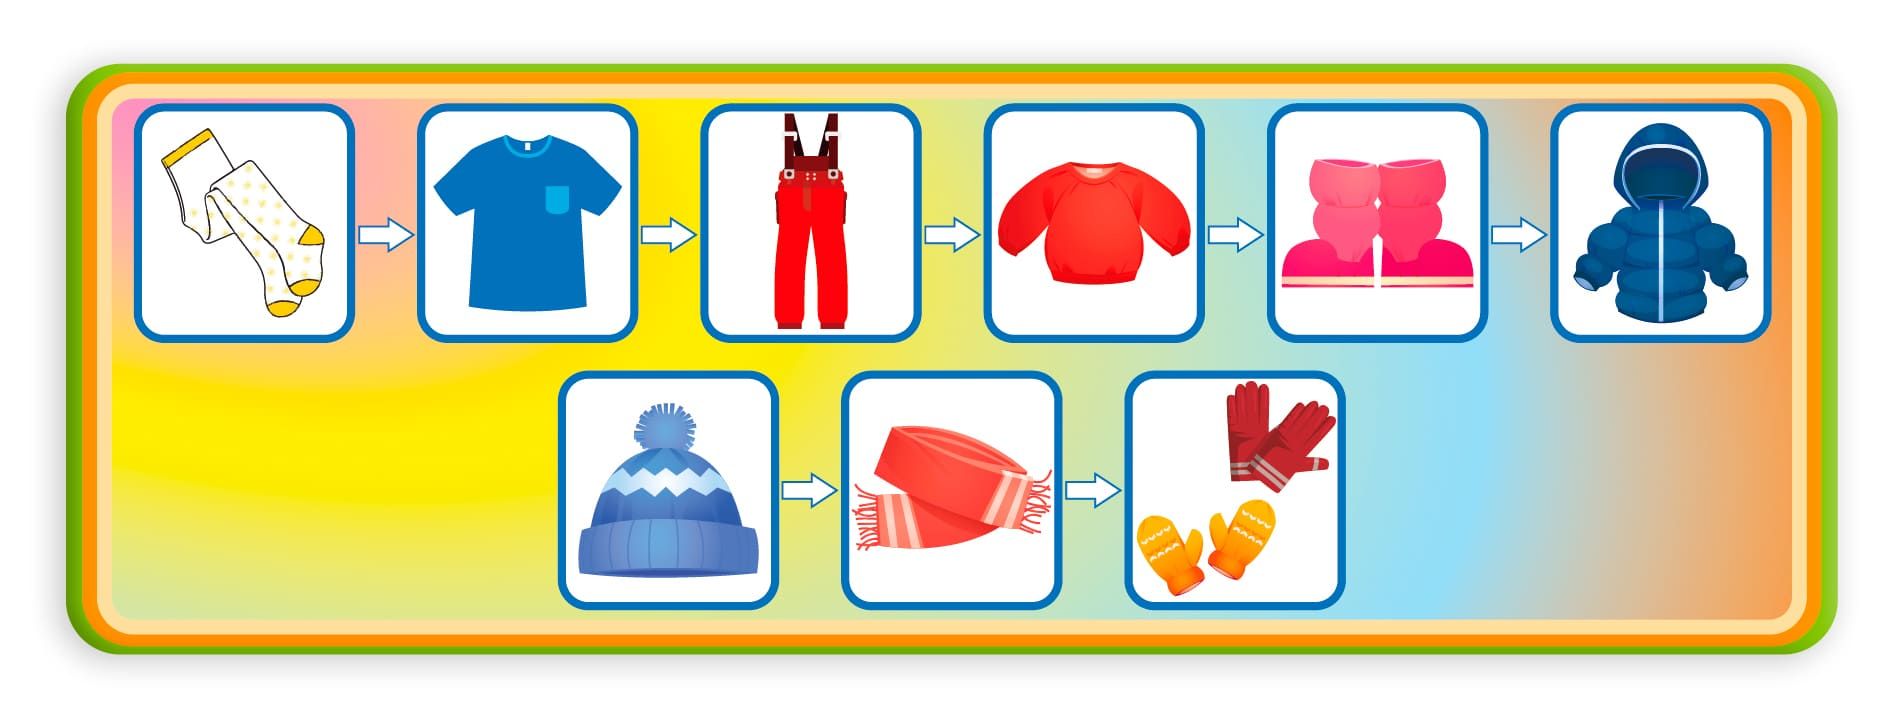 Алгоритм одевания зимней одежды в детском саду в картинках